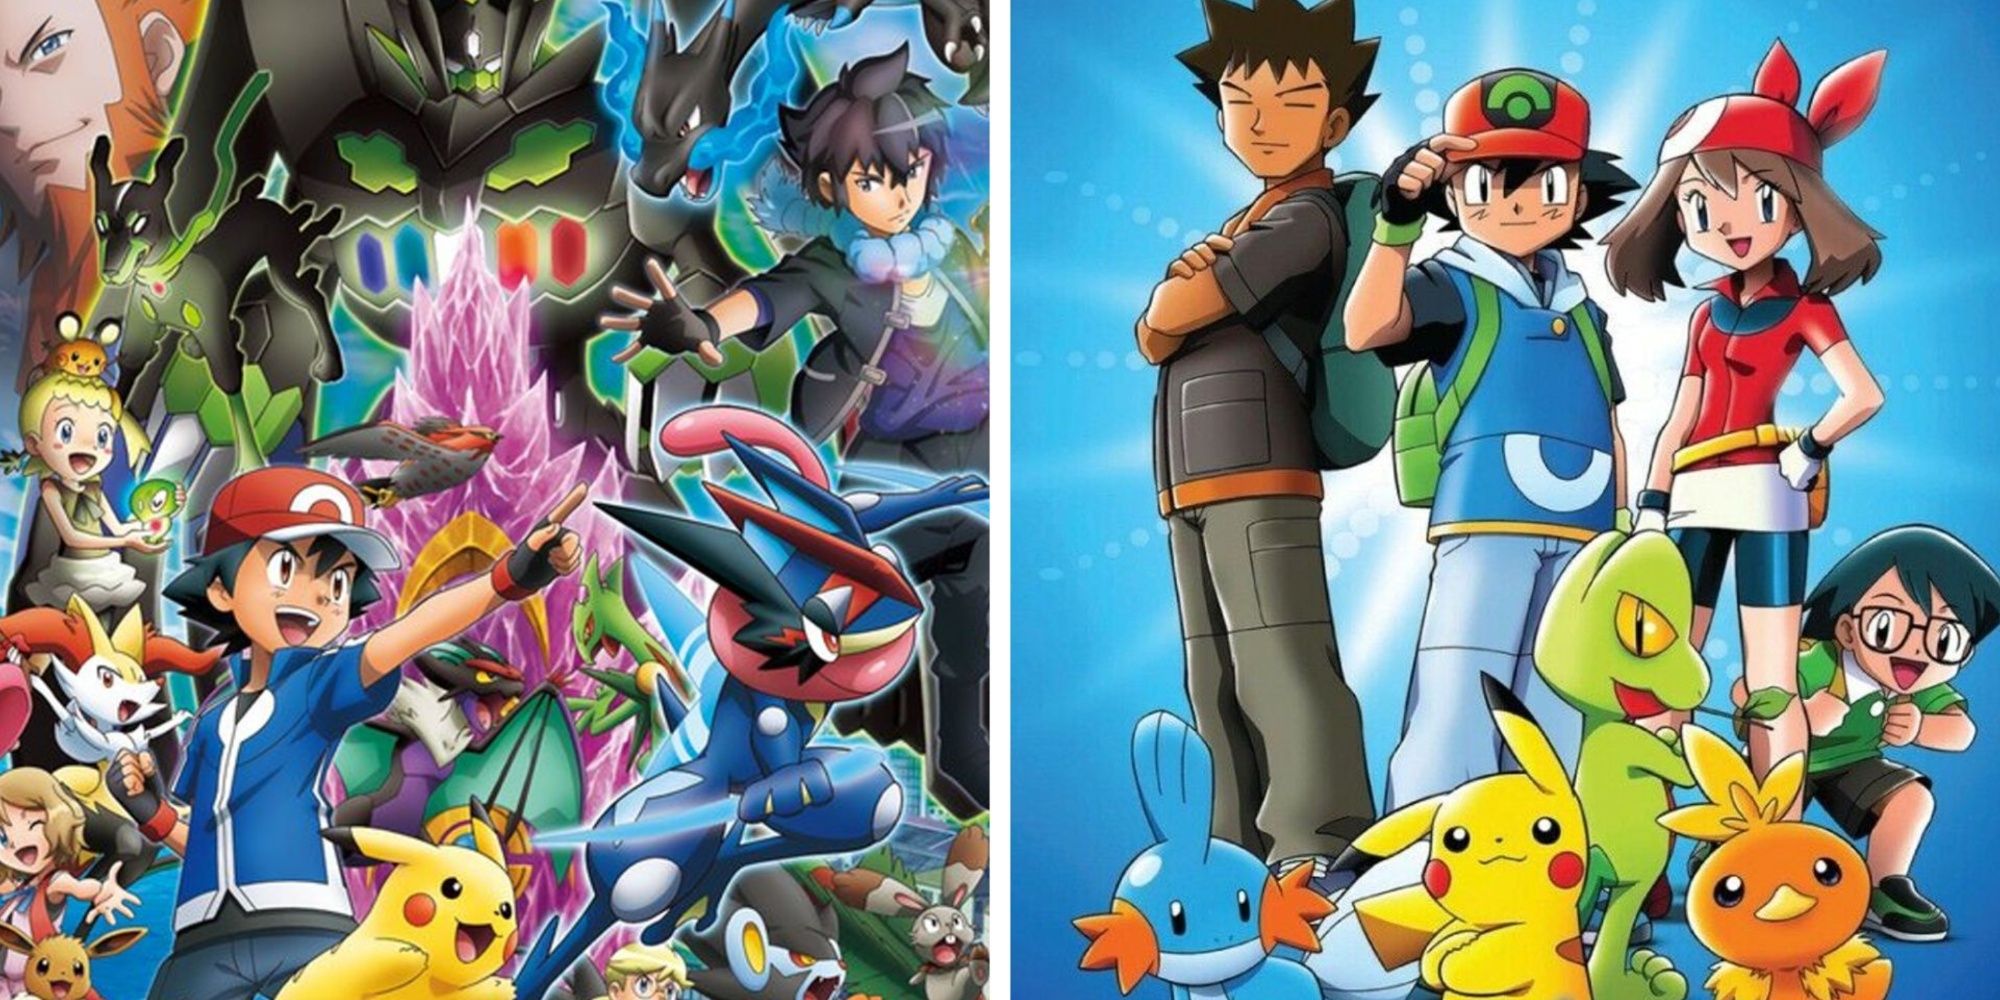 Split Image of Pokemon Season 8 Poster & Season 19